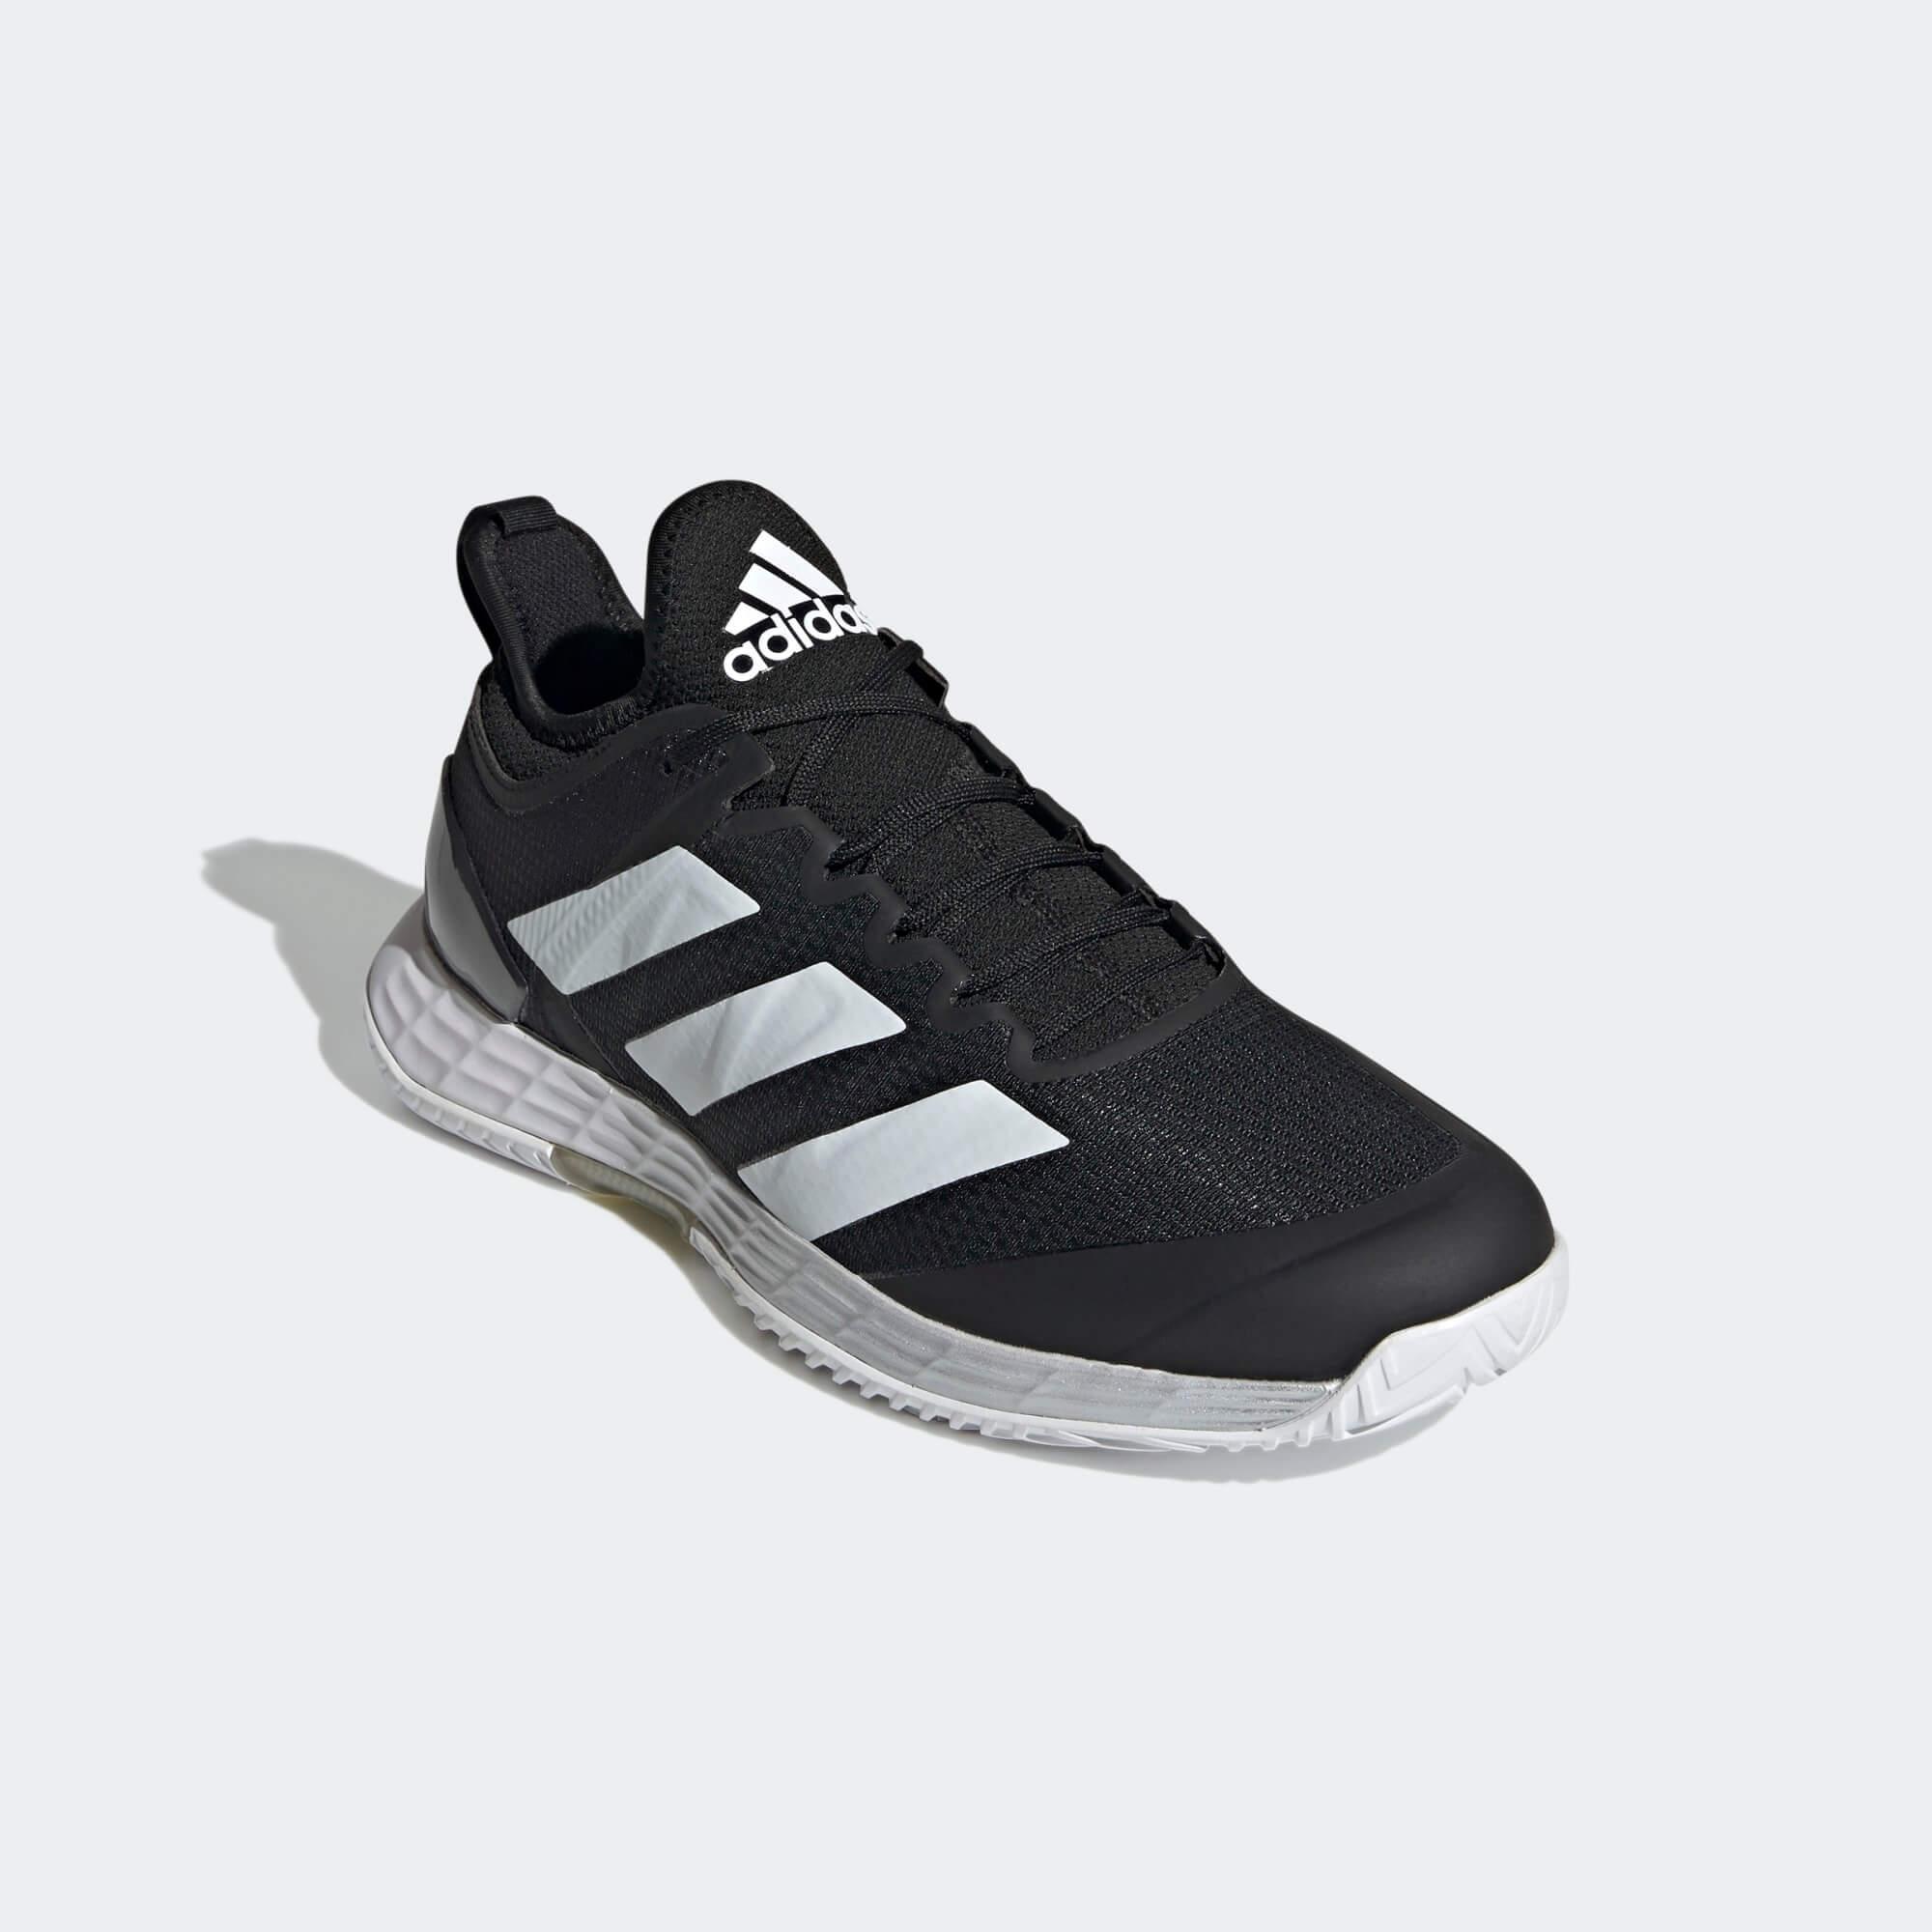 Adidas Mens Adizero Ubersonic 4 Tennis Shoes - Black - Tennisnuts.com